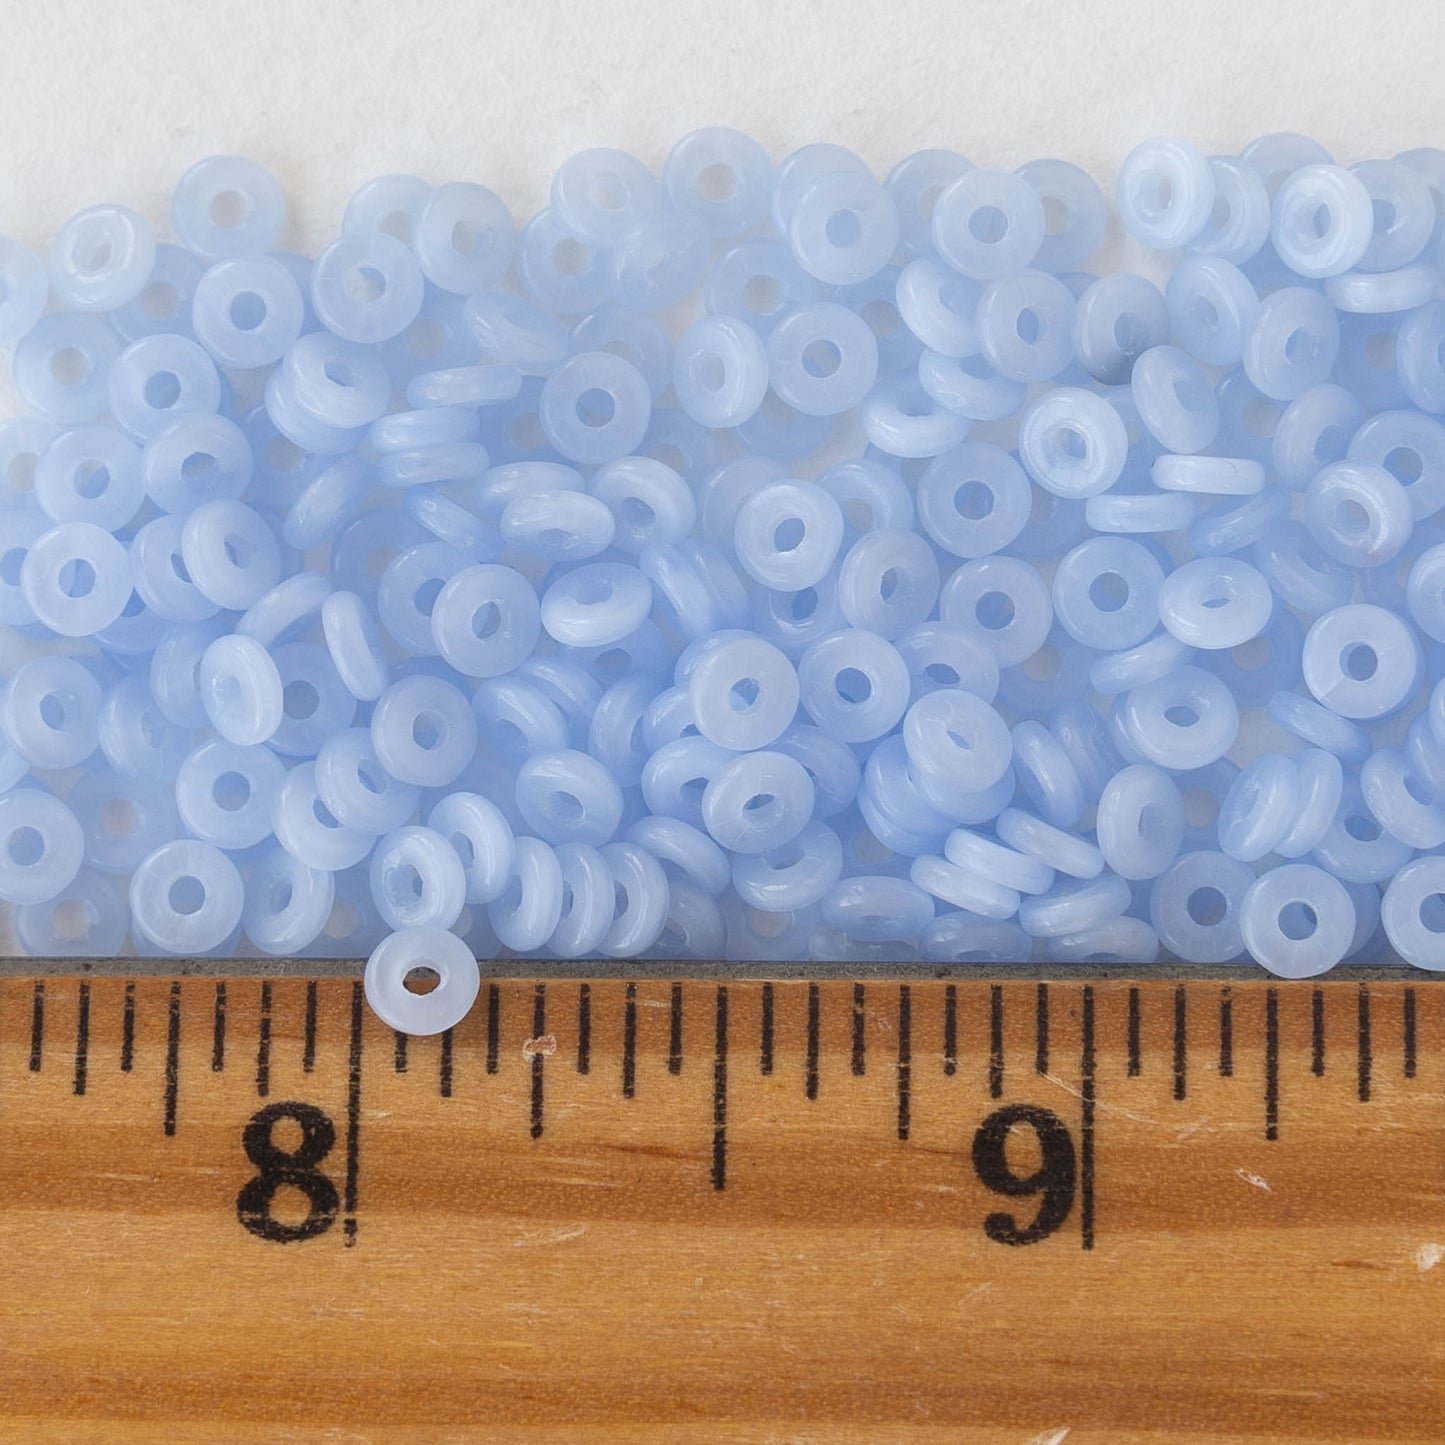 4mm O-Ring Beads - Light Blue - 10 grams